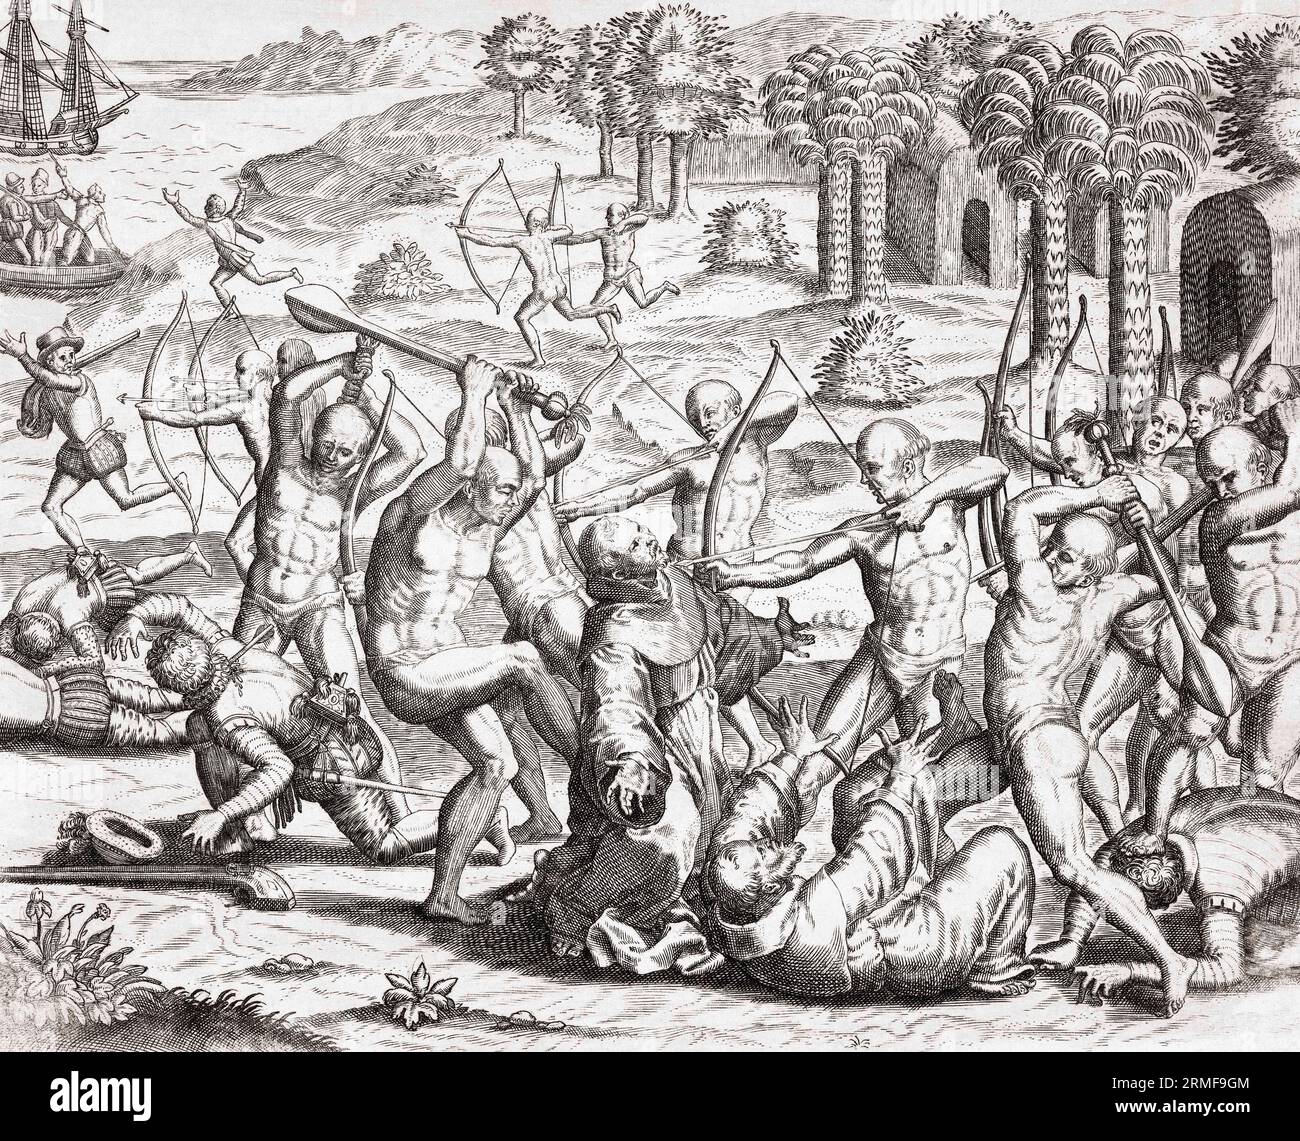 Sacerdotes y soldados españoles atacados por indígenas después de su llegada a las Américas. Después de una obra de finales del siglo XVI de Theodor de Bry. Foto de stock